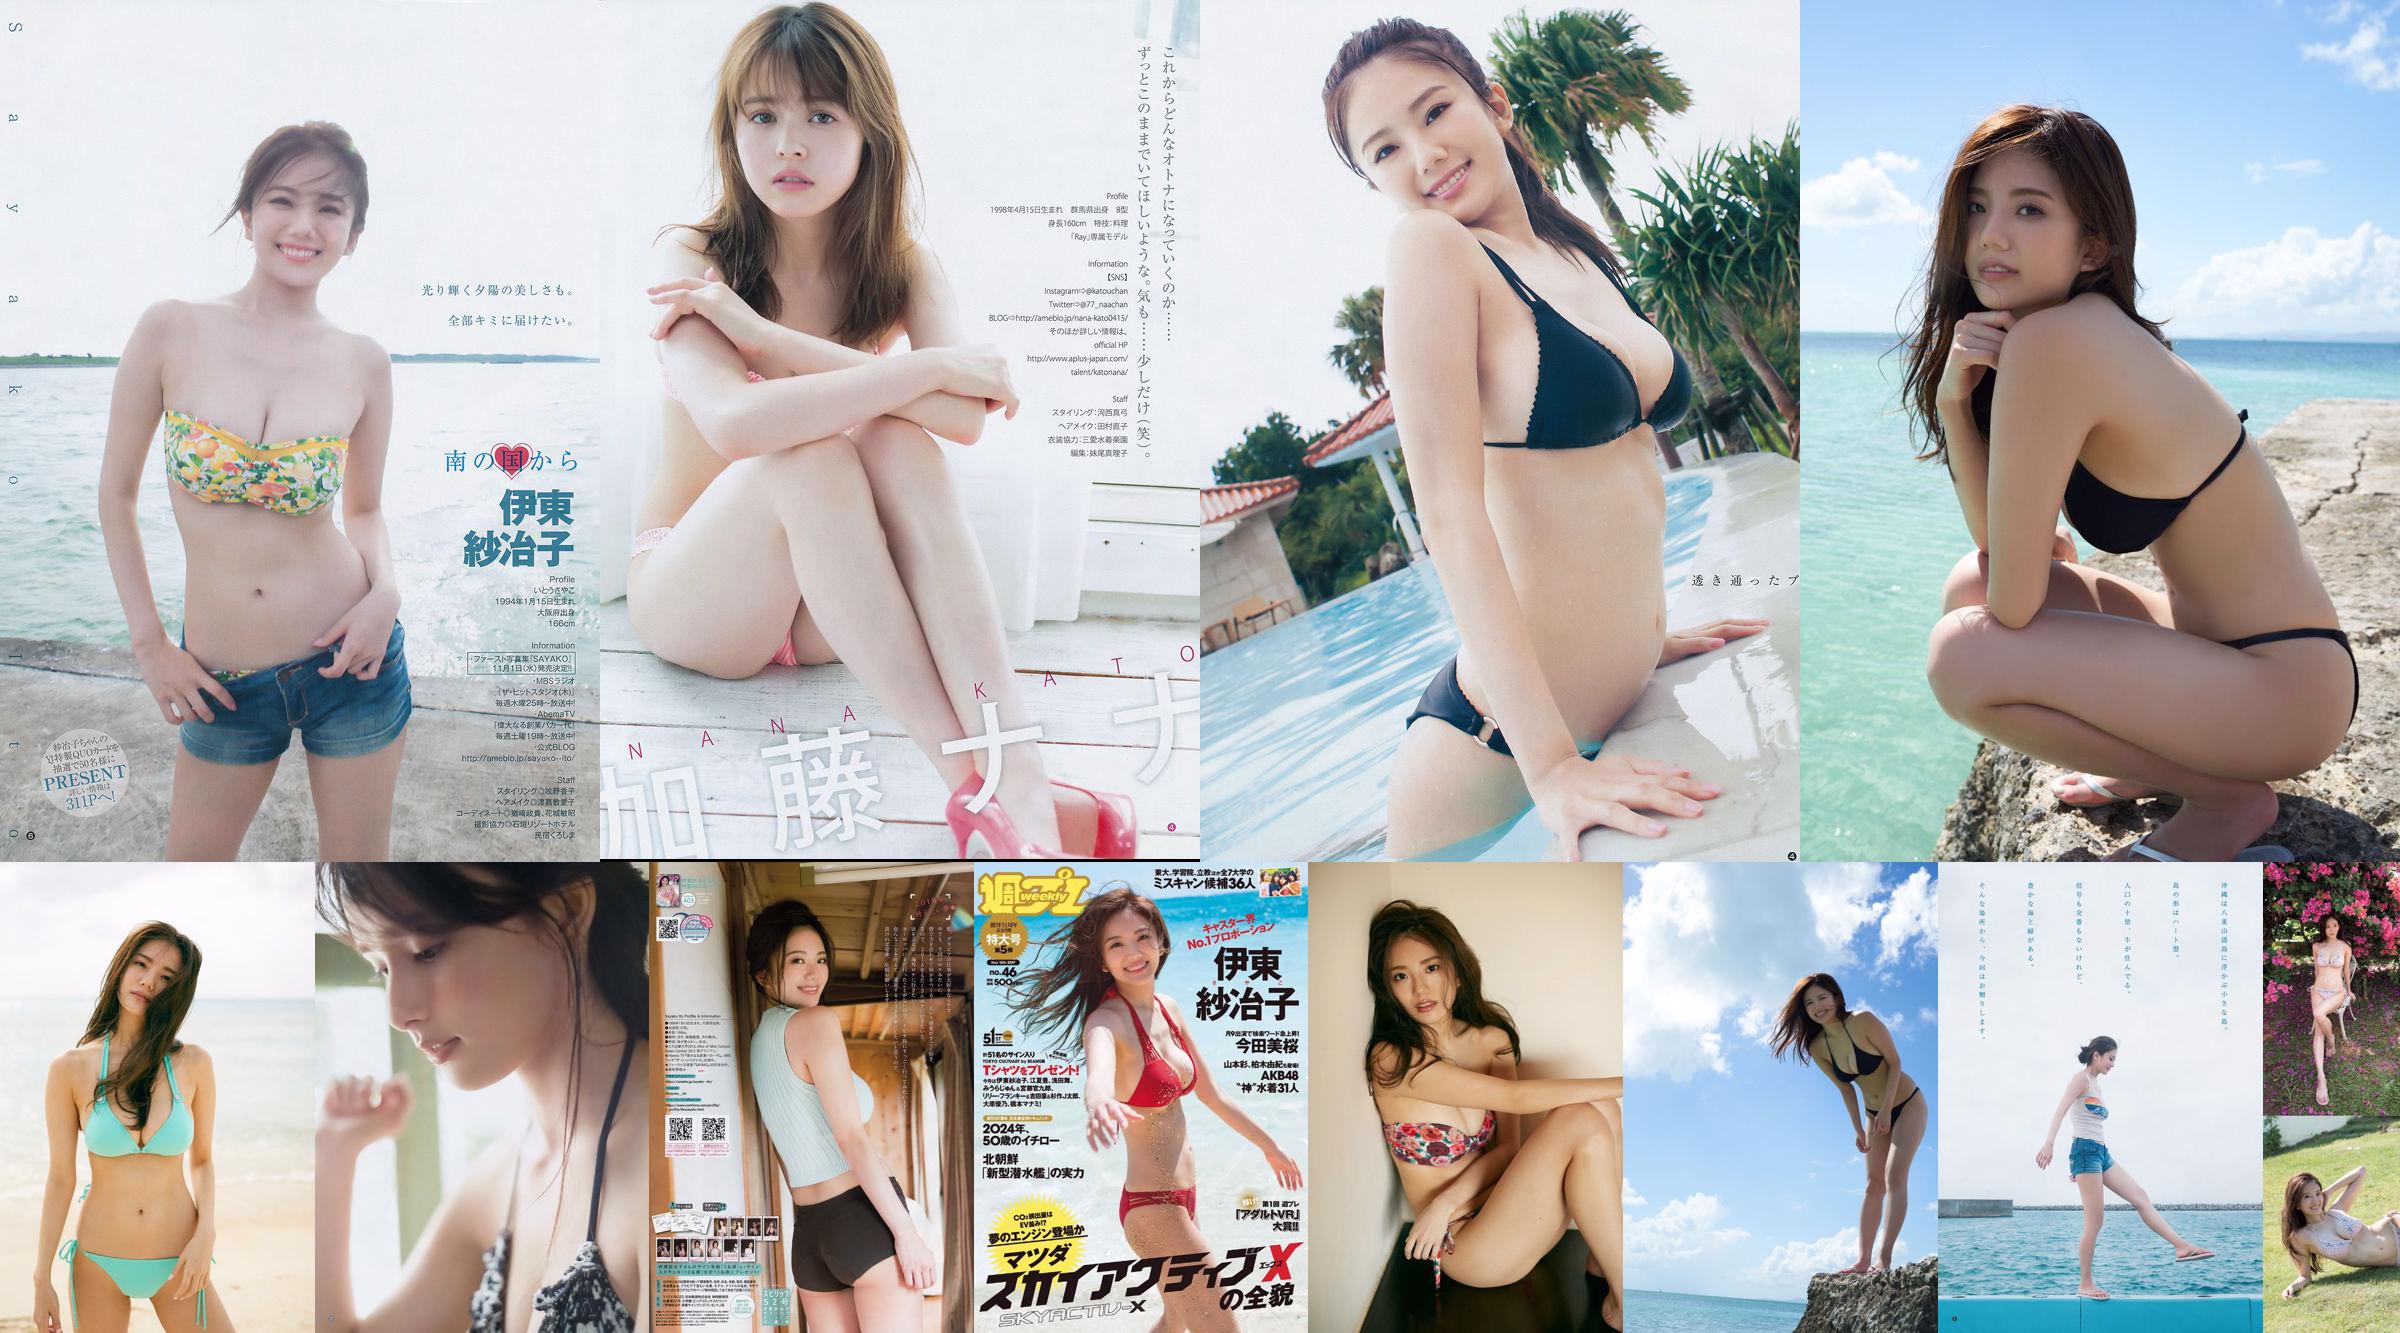 Ito Sayeko, Mima Reiko, Sugimoto Yumi, Sato Reina, Yoshiki りさ Toyama Akiko, Naninao [Weekly Playboy] 2016 No.36 Photo Magazine No.739dab Page 1